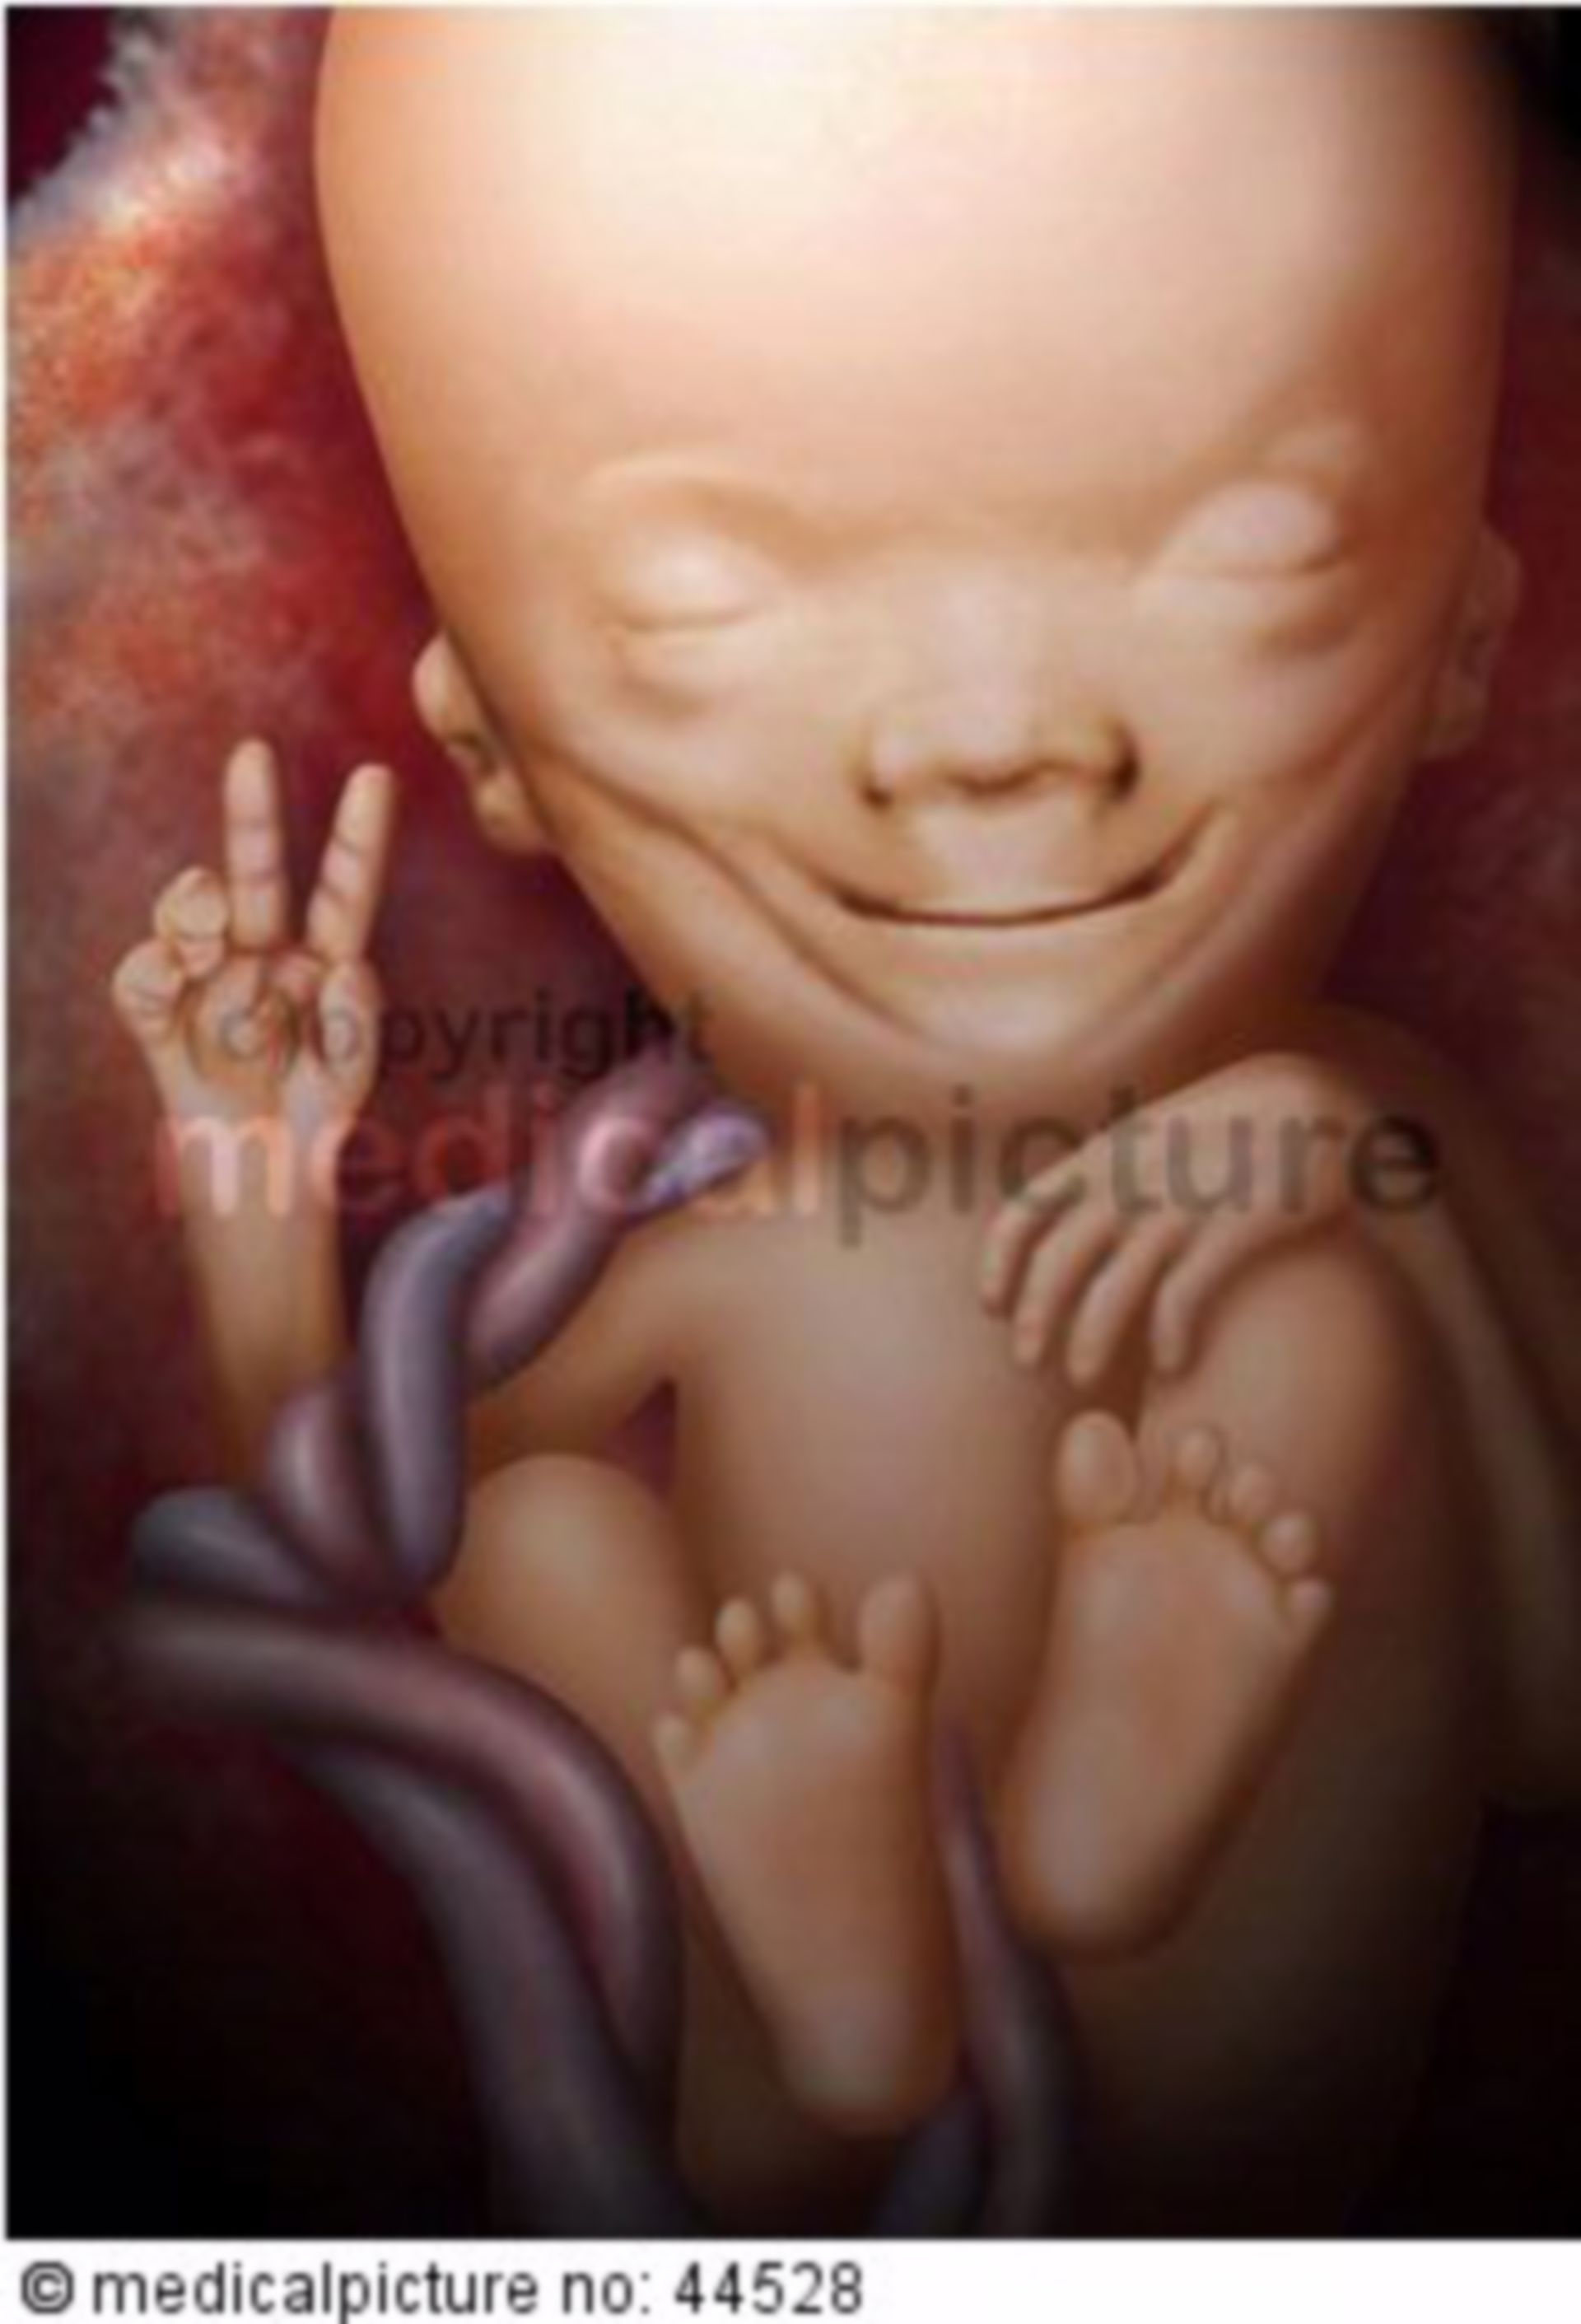 Fetus, 70 days old